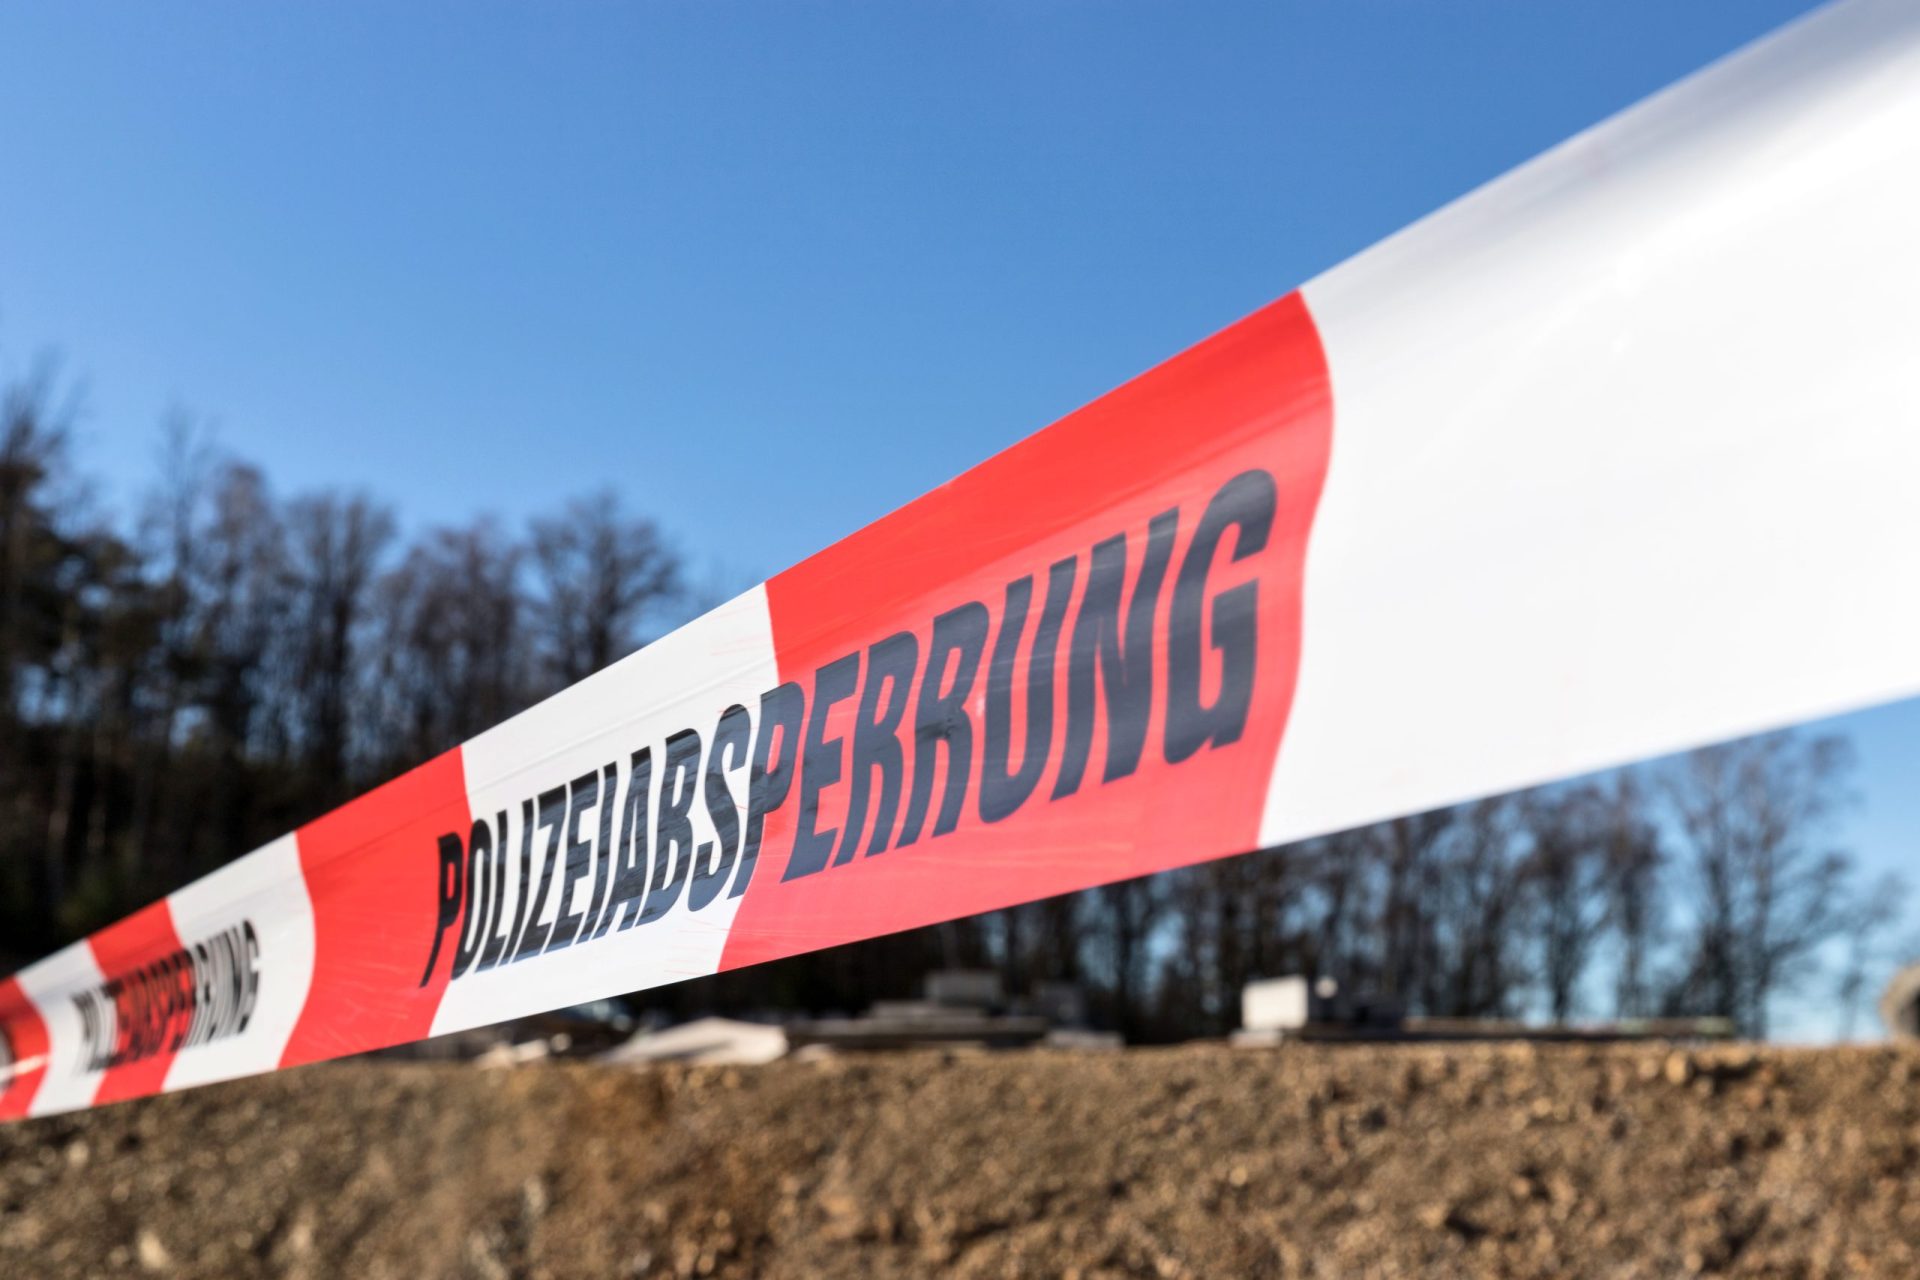 Duas pessoas mortas em tiroteio na cidade alemã de Espelkamp